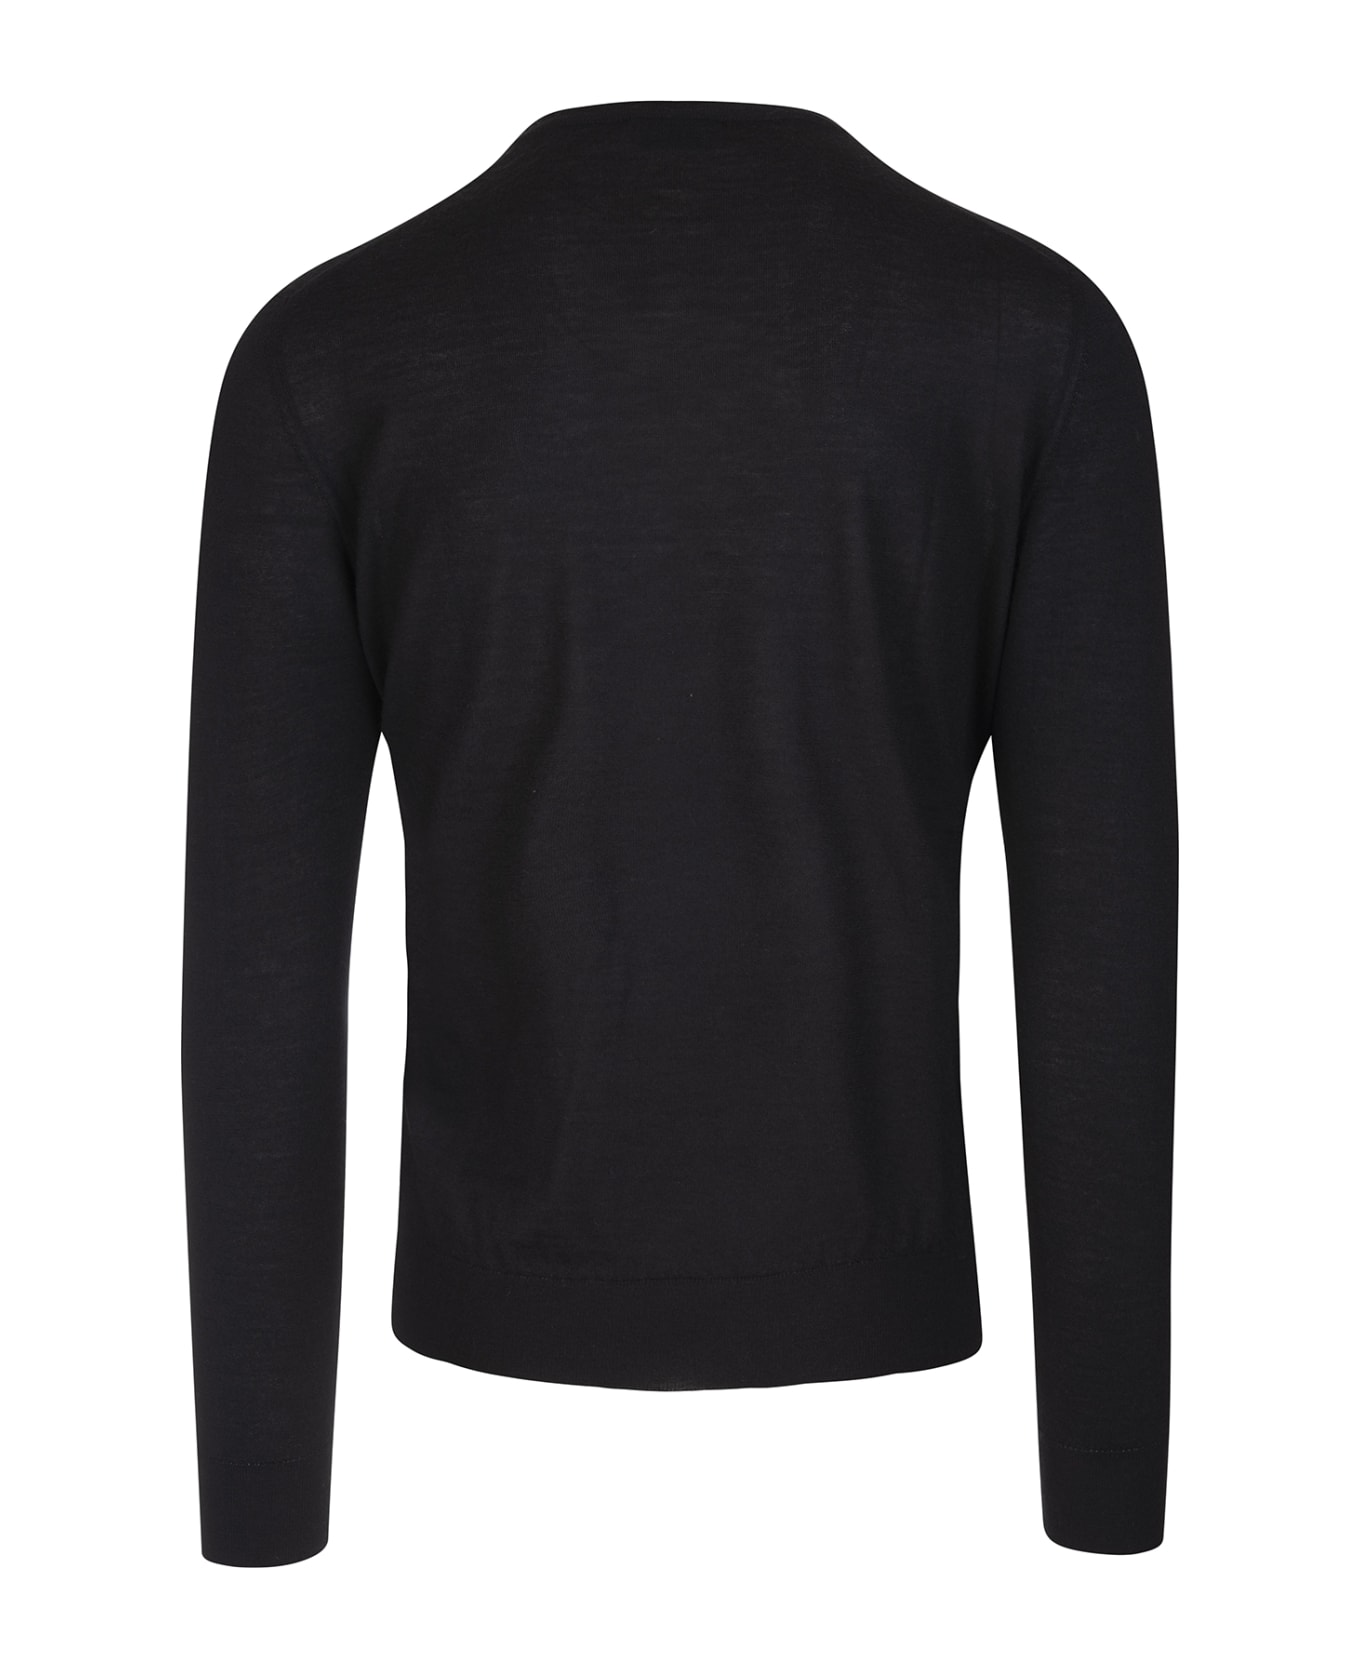 Fedeli Man Black Cashmere Pullover With V-neck - Black